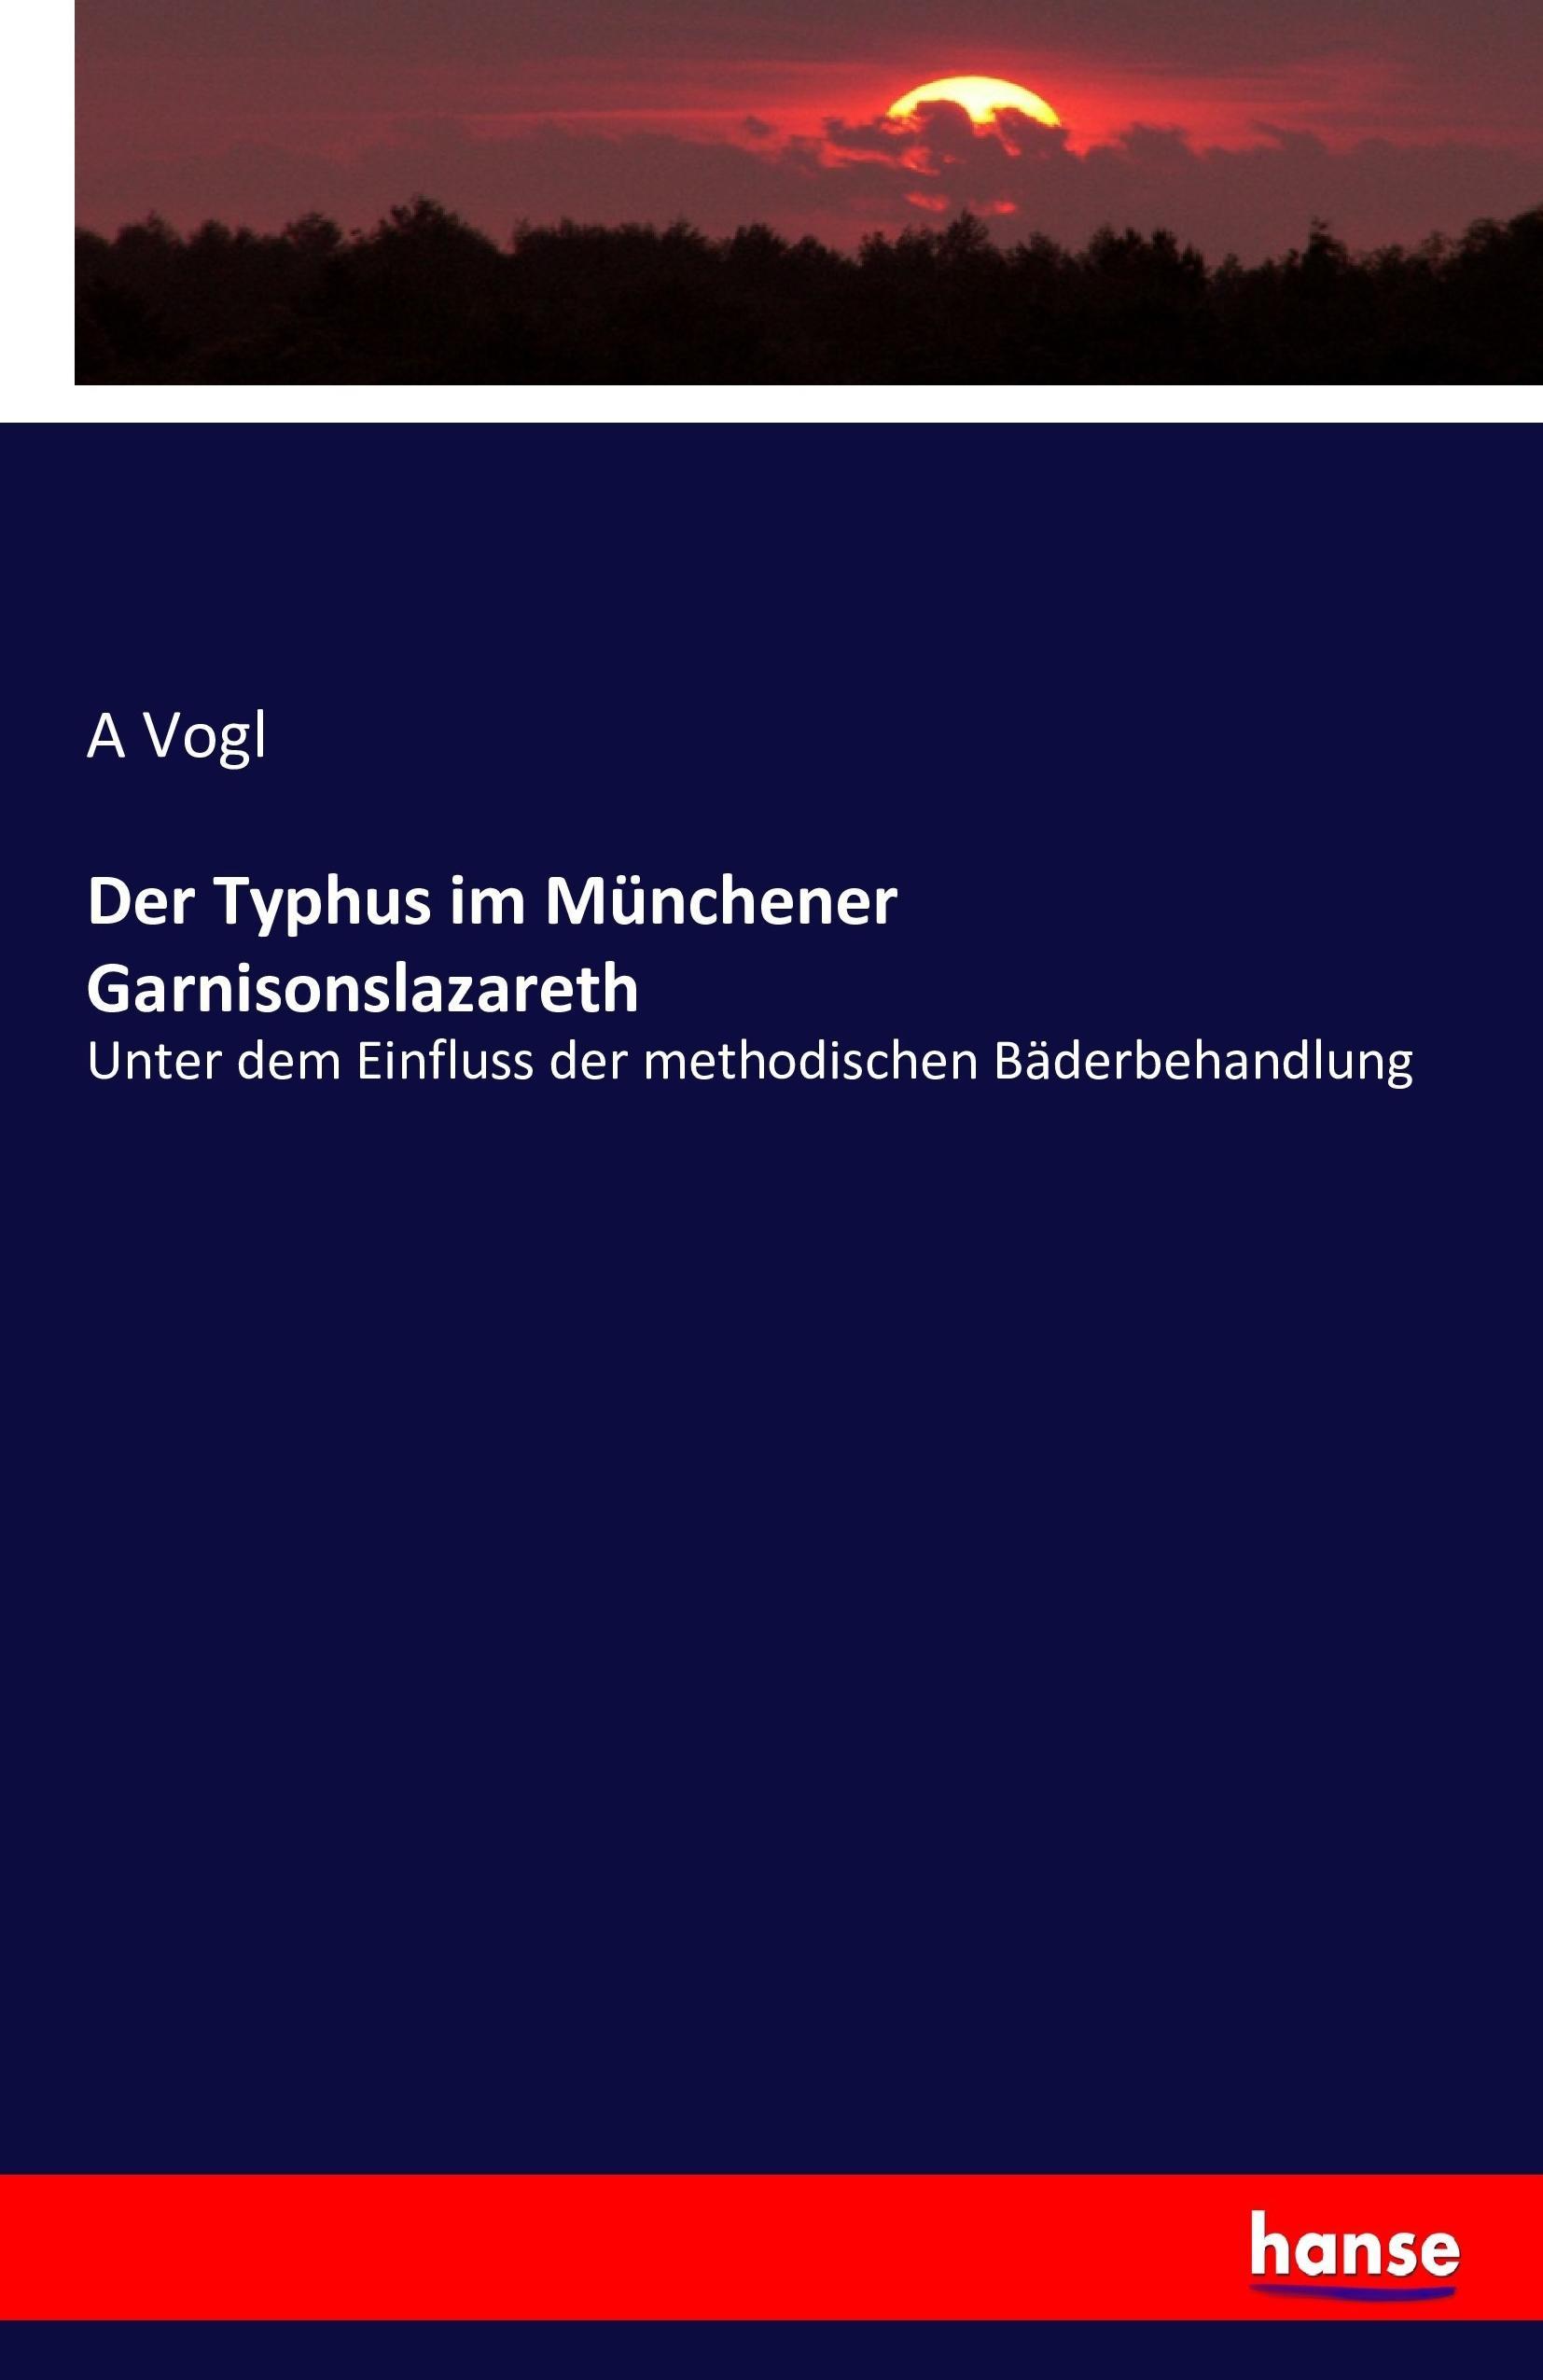 Der Typhus im Muenchener Garnisonslazareth - Vogl, A